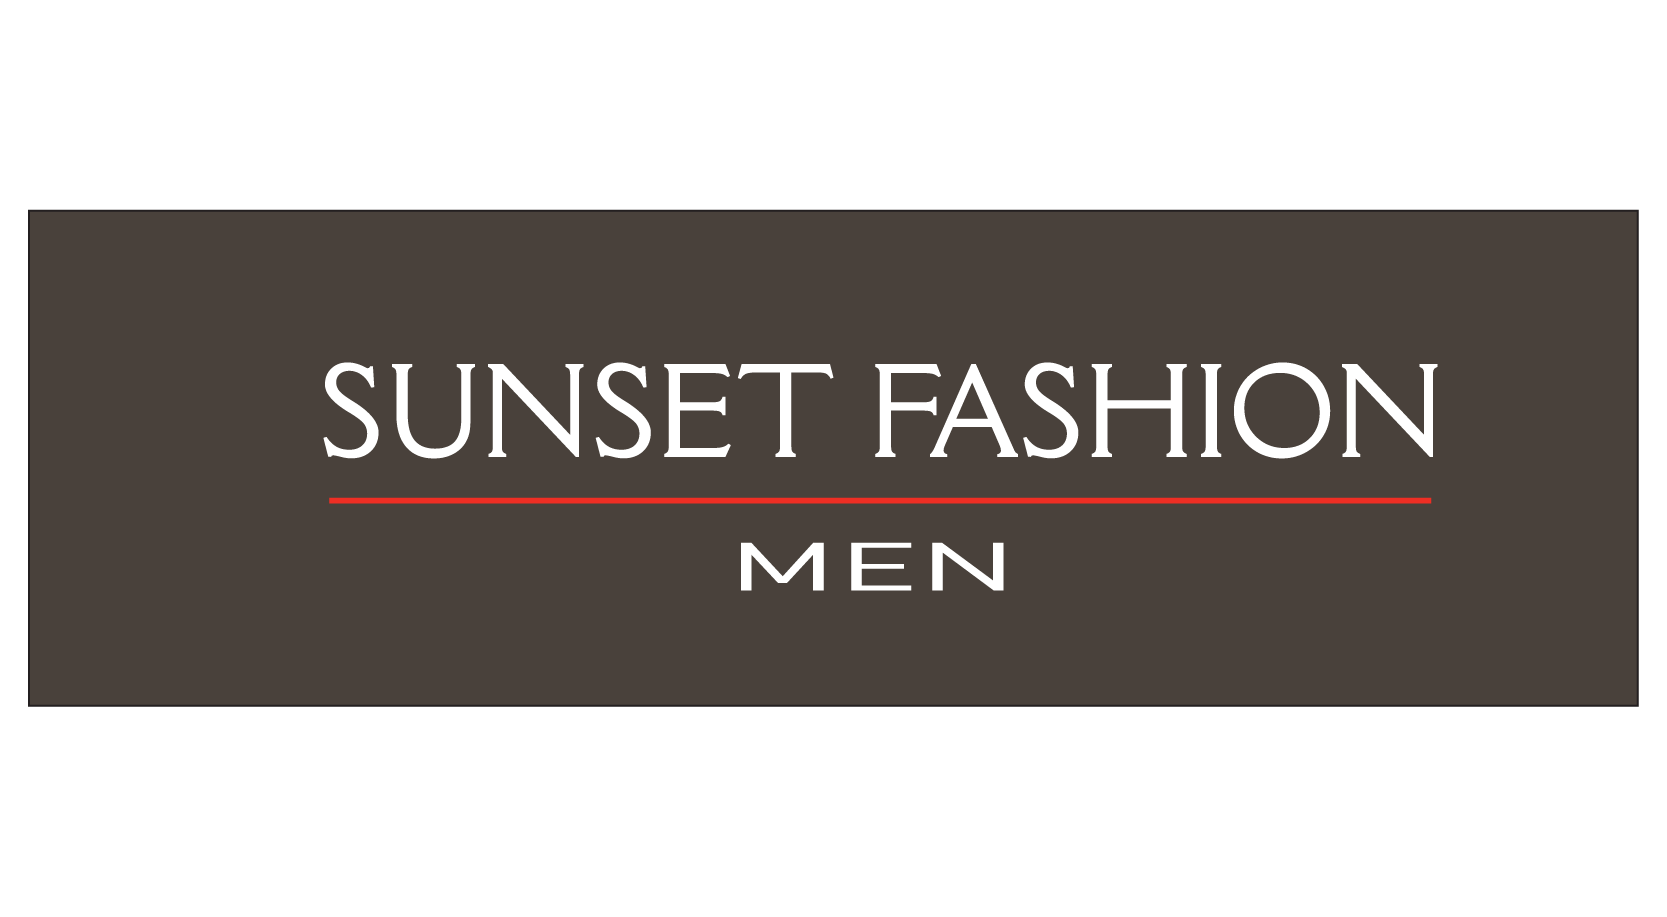 Sunset Fashion men